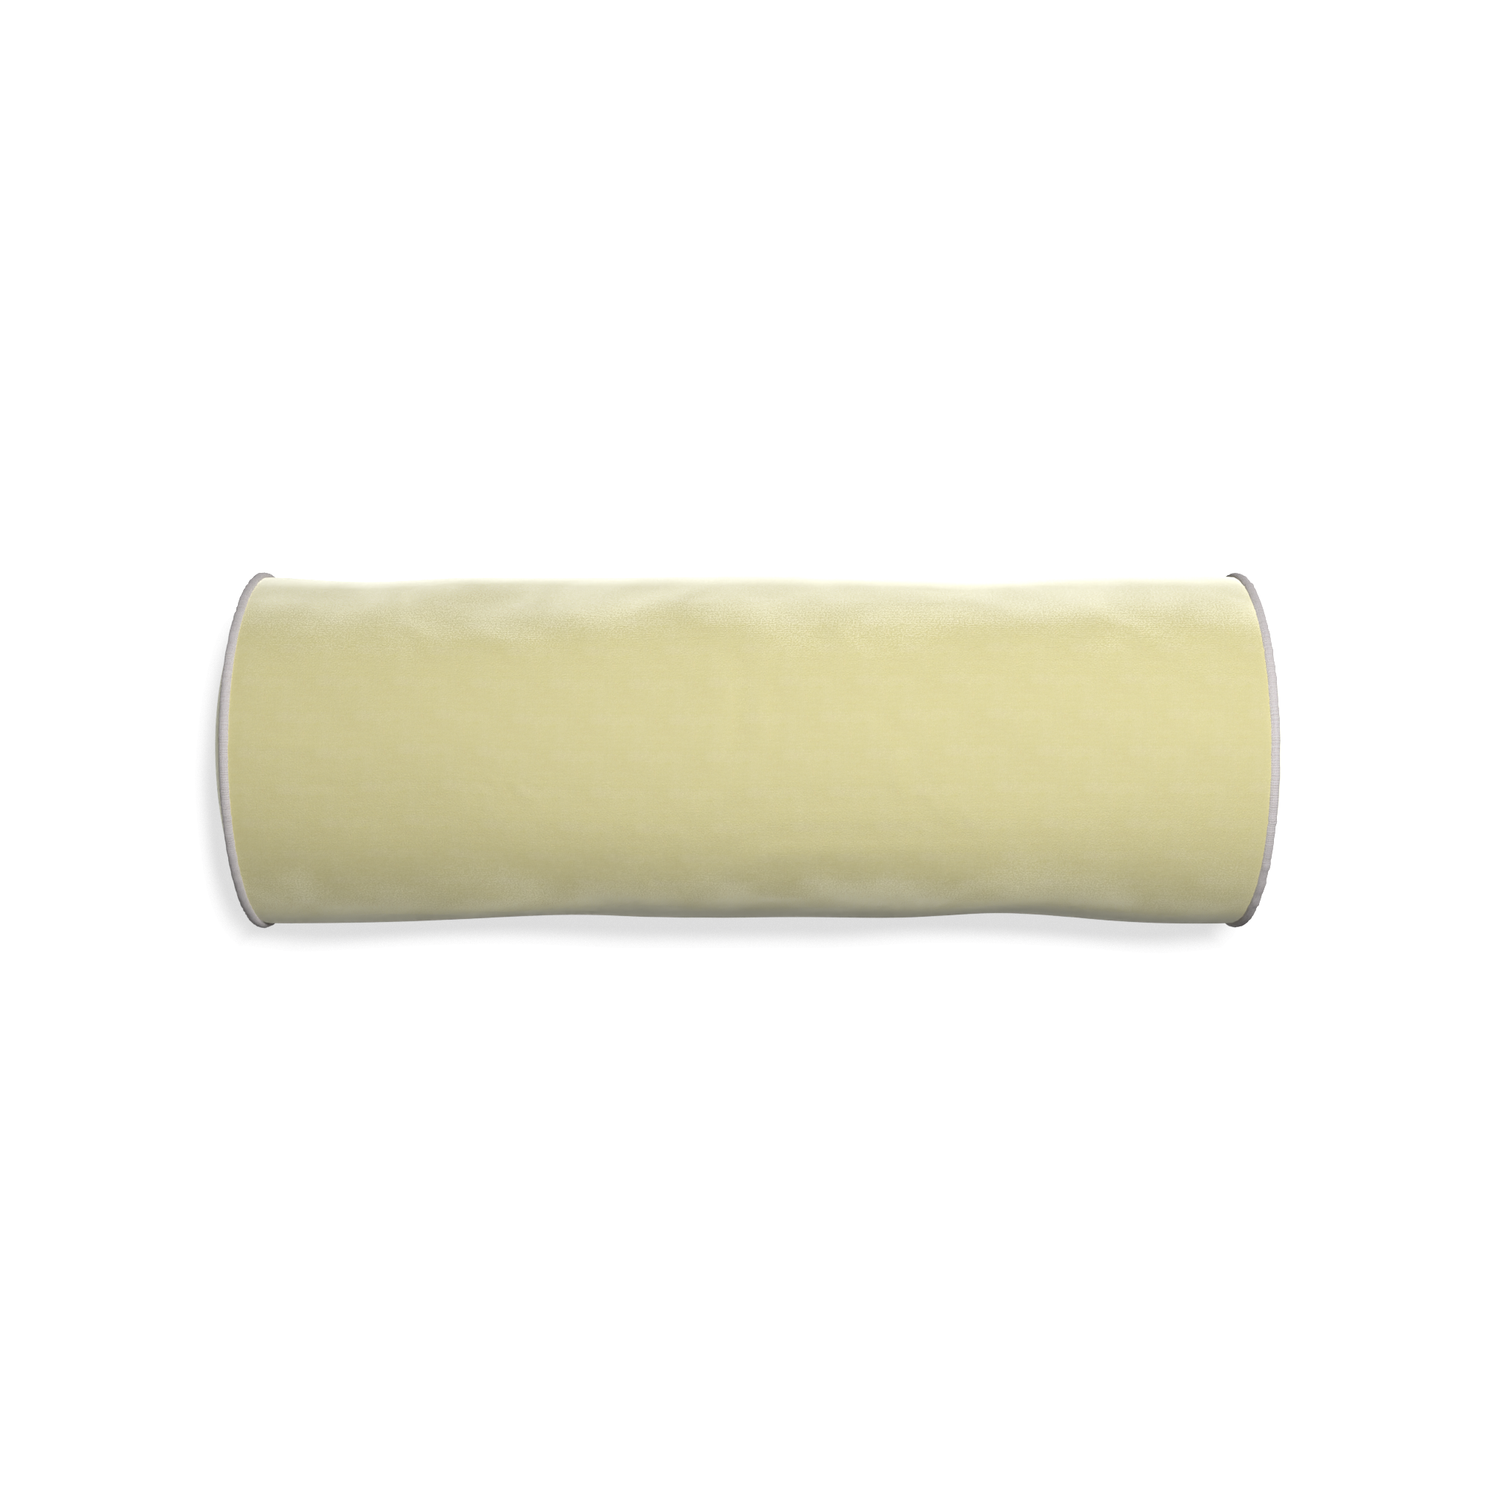 Bolster pear velvet custom pillow with pebble piping on white background